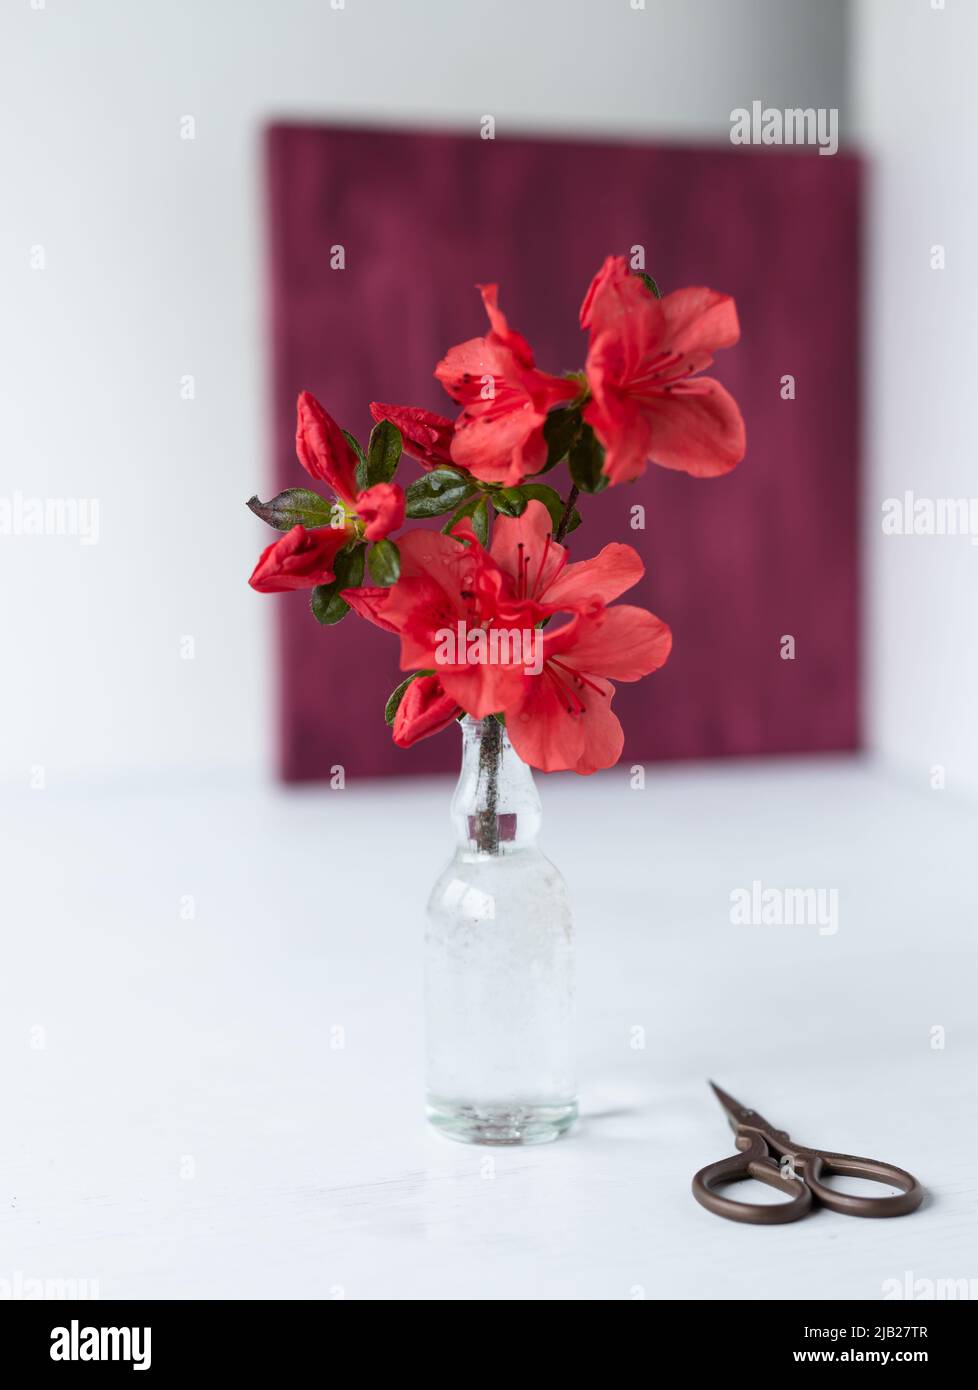 Un ramo di una azalea fiorente in un vaso di vetro sullo sfondo di un quadro botanico, un erbario di fiori di azalea secchi. Fiori rossi Foto Stock